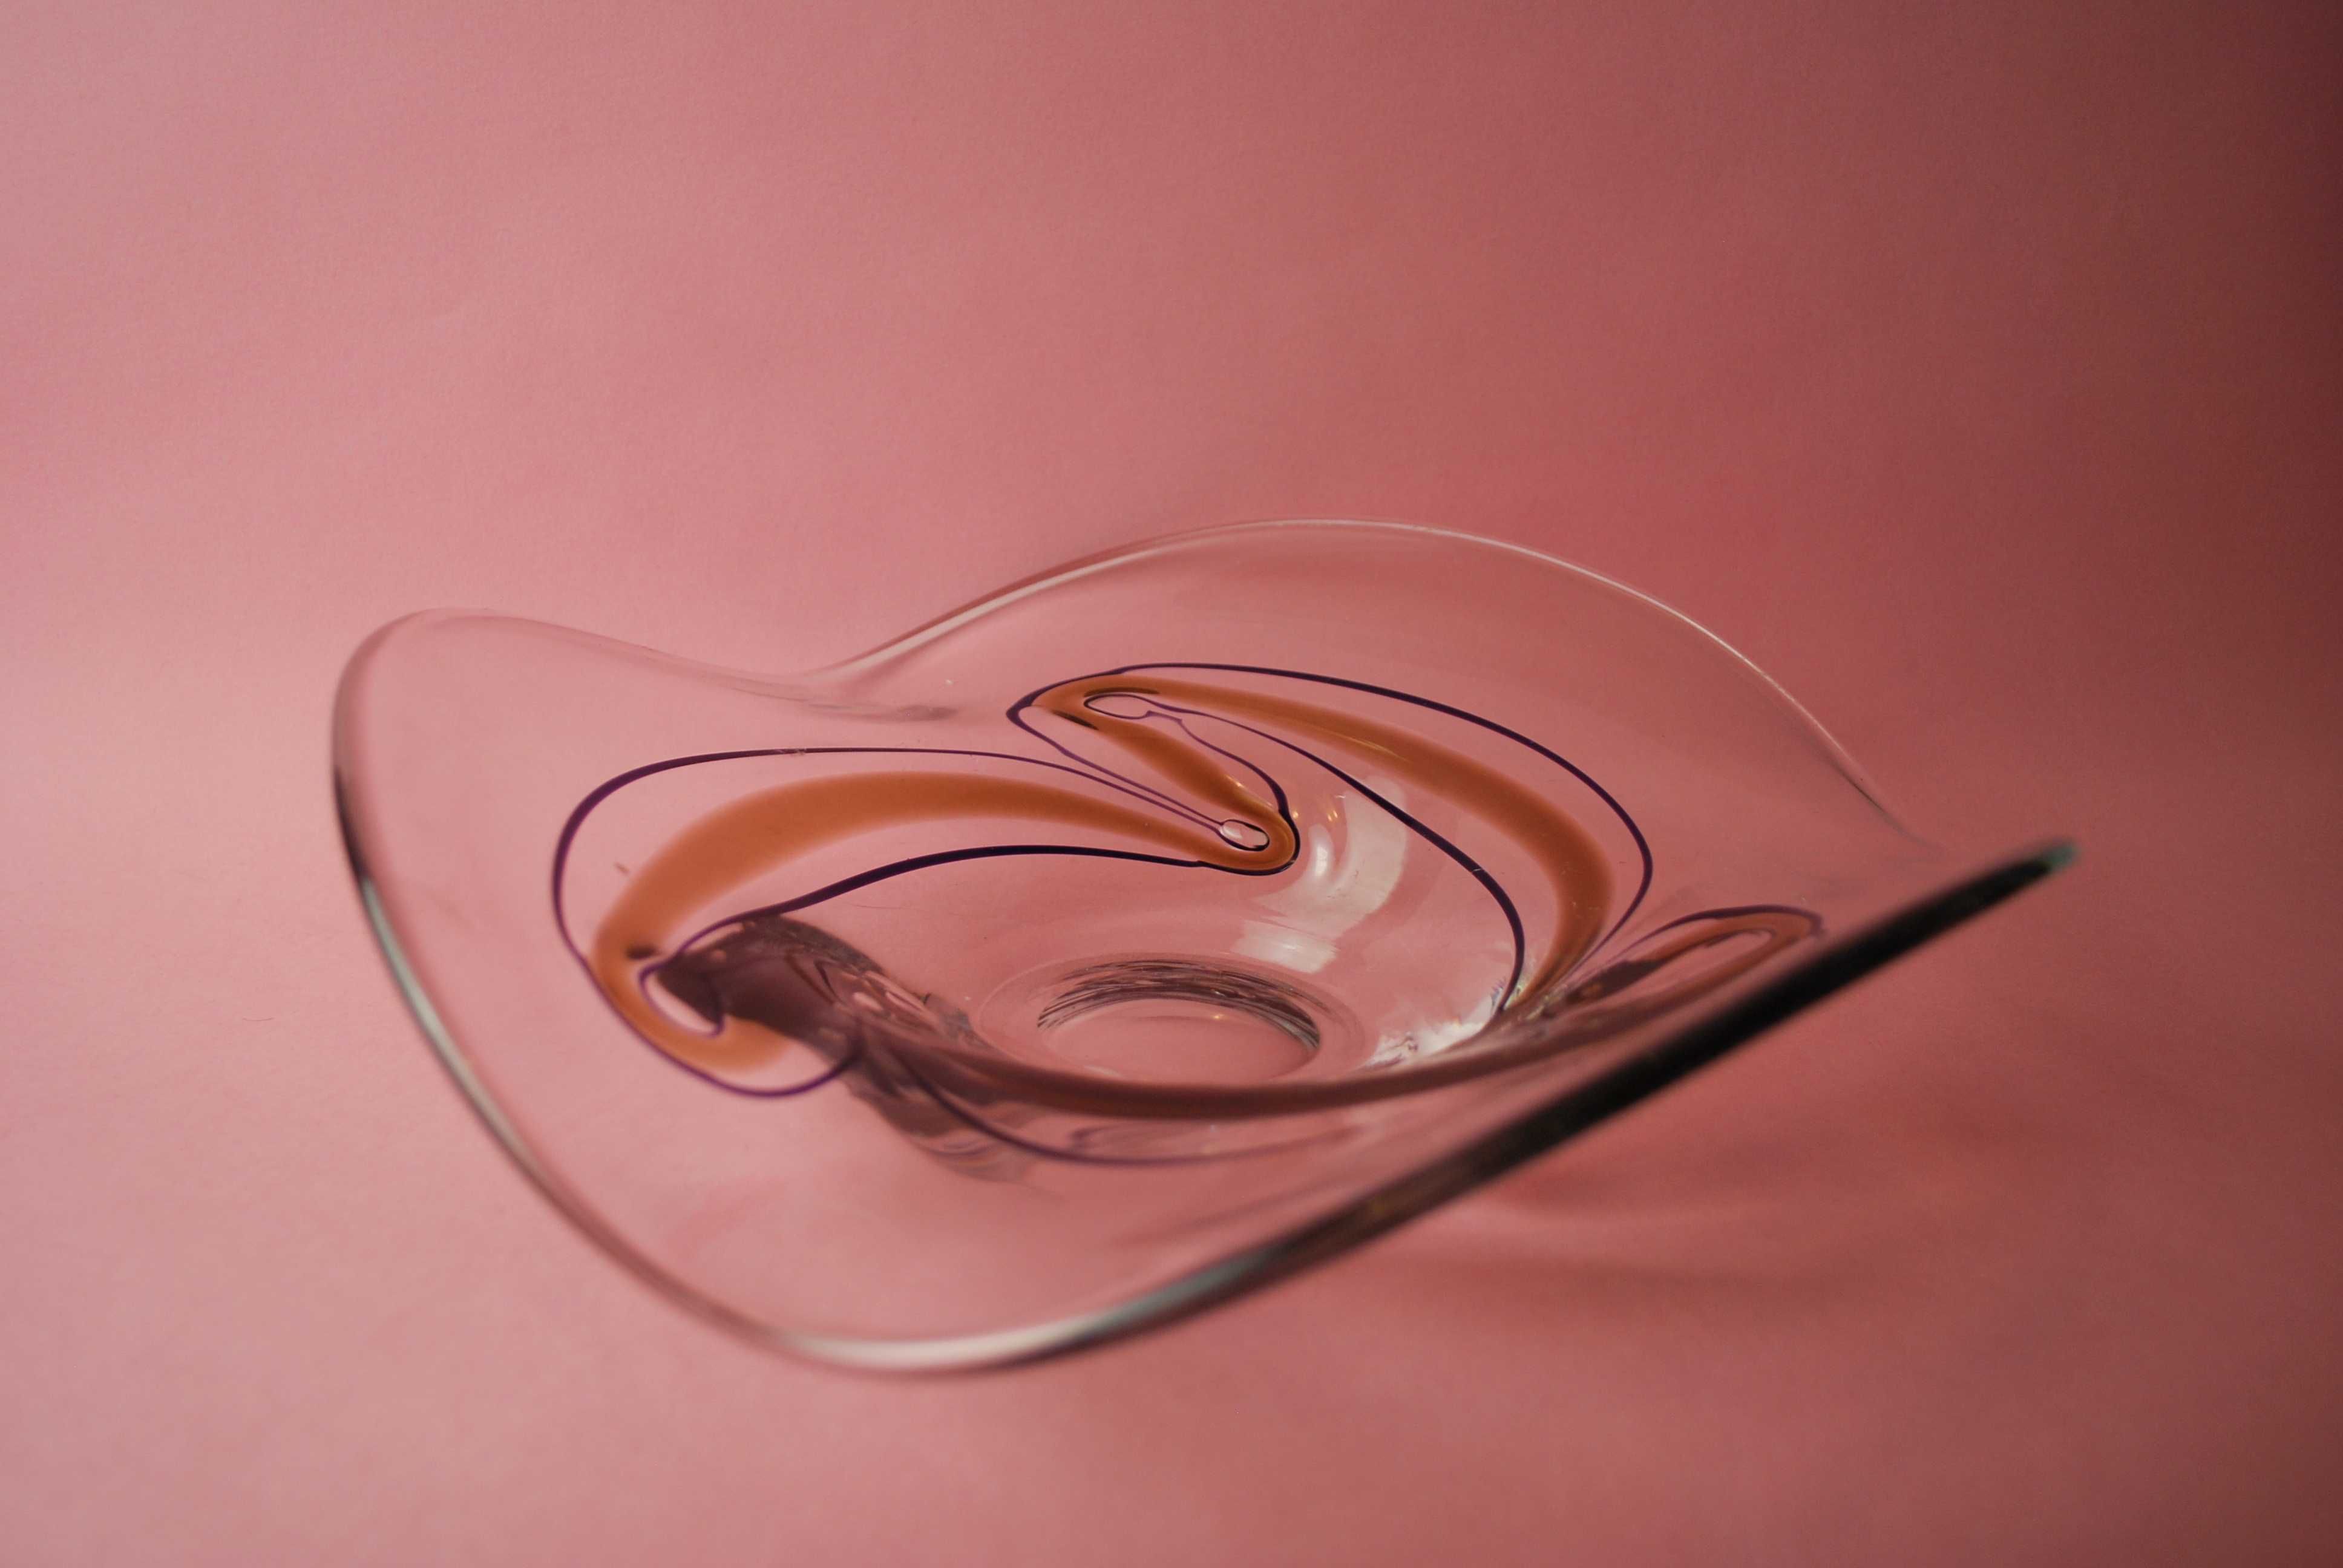 misa patera szkło artystyczne art glass modern